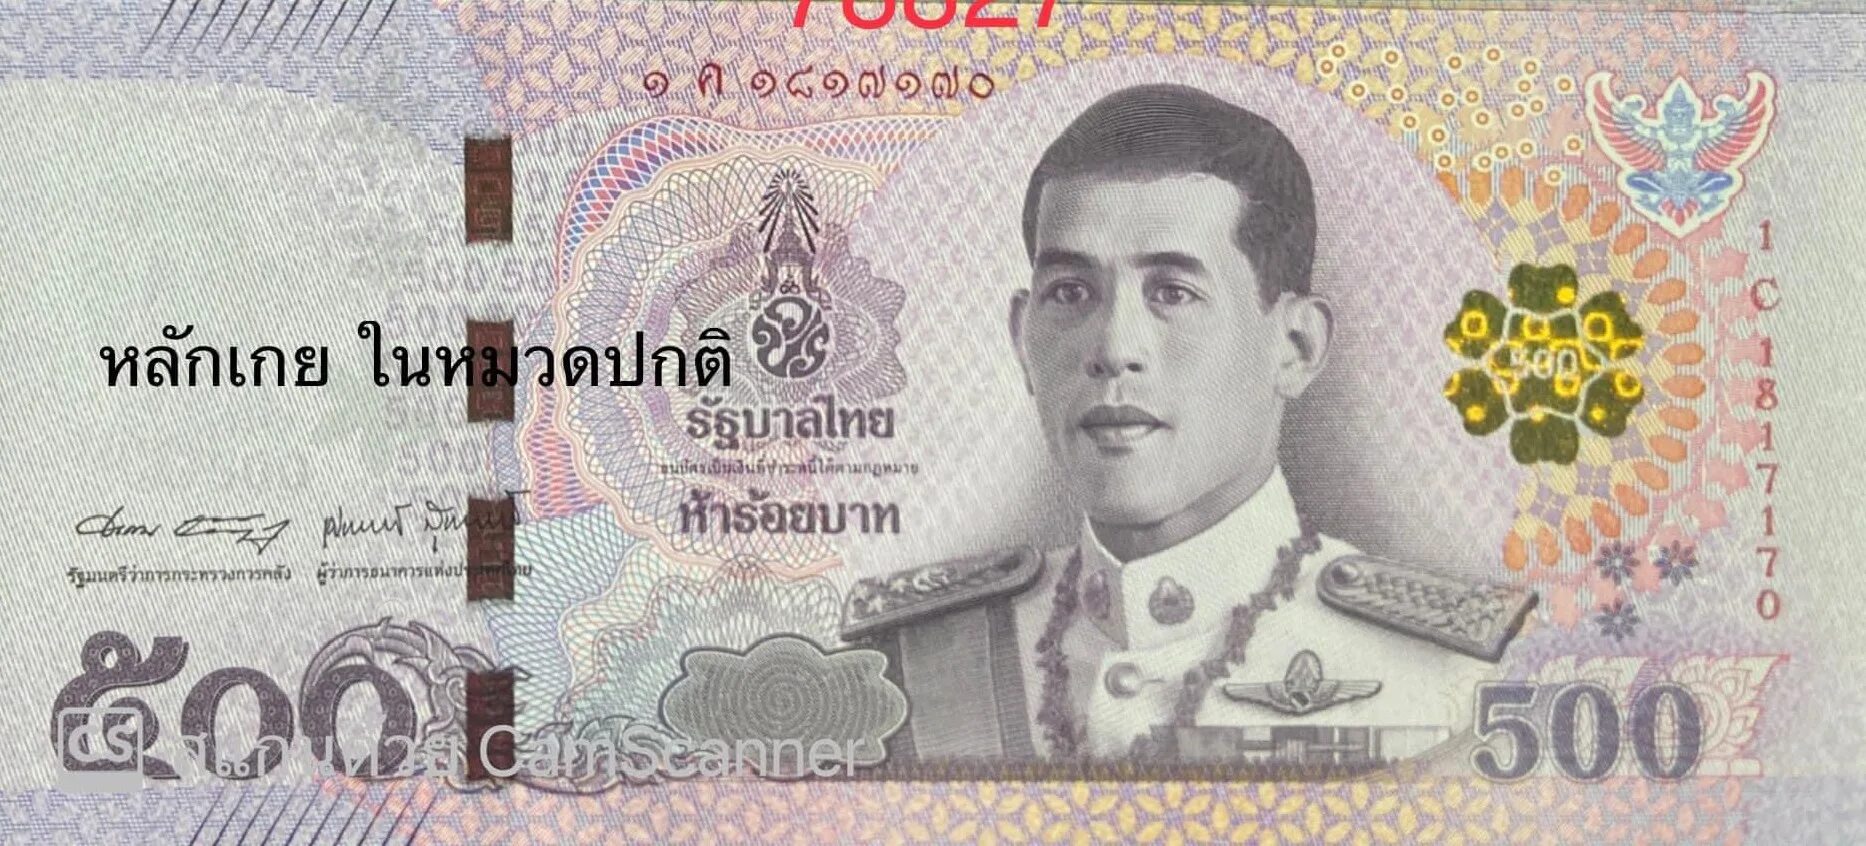 Банкноты Таиланда 500 бат. Тайланд банкнота 500 бат. Купюра 500 бат. Тайские купюры 500 Батов. 500 бат